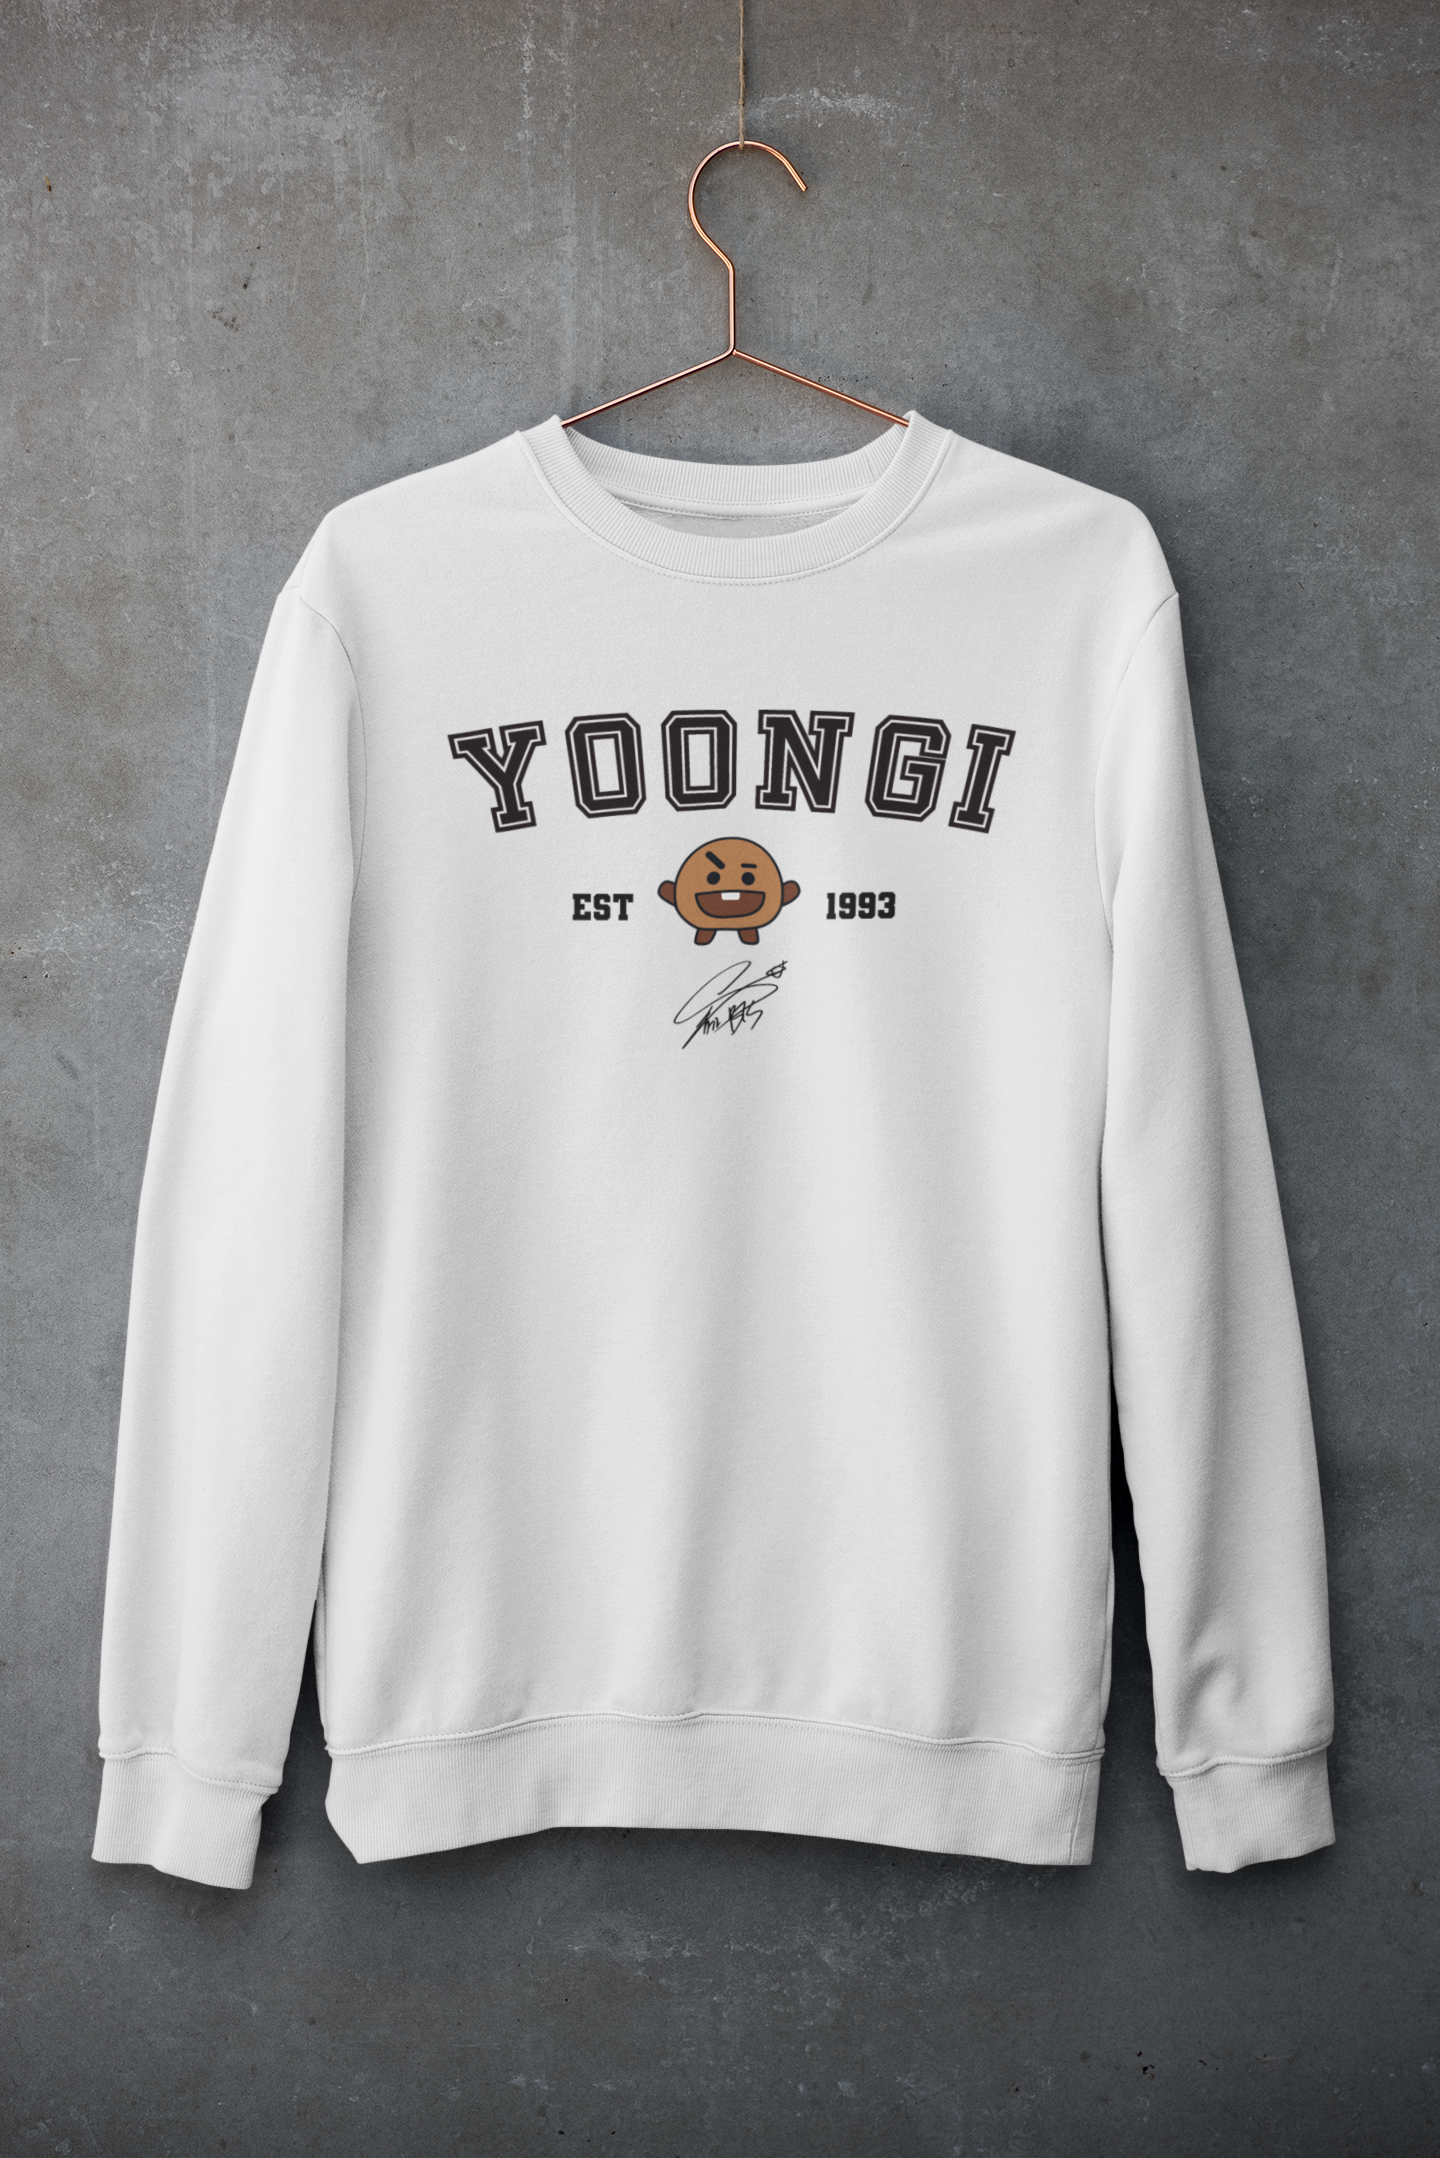 Yoongi- Shooky: BTS- Winter Sweatshirts